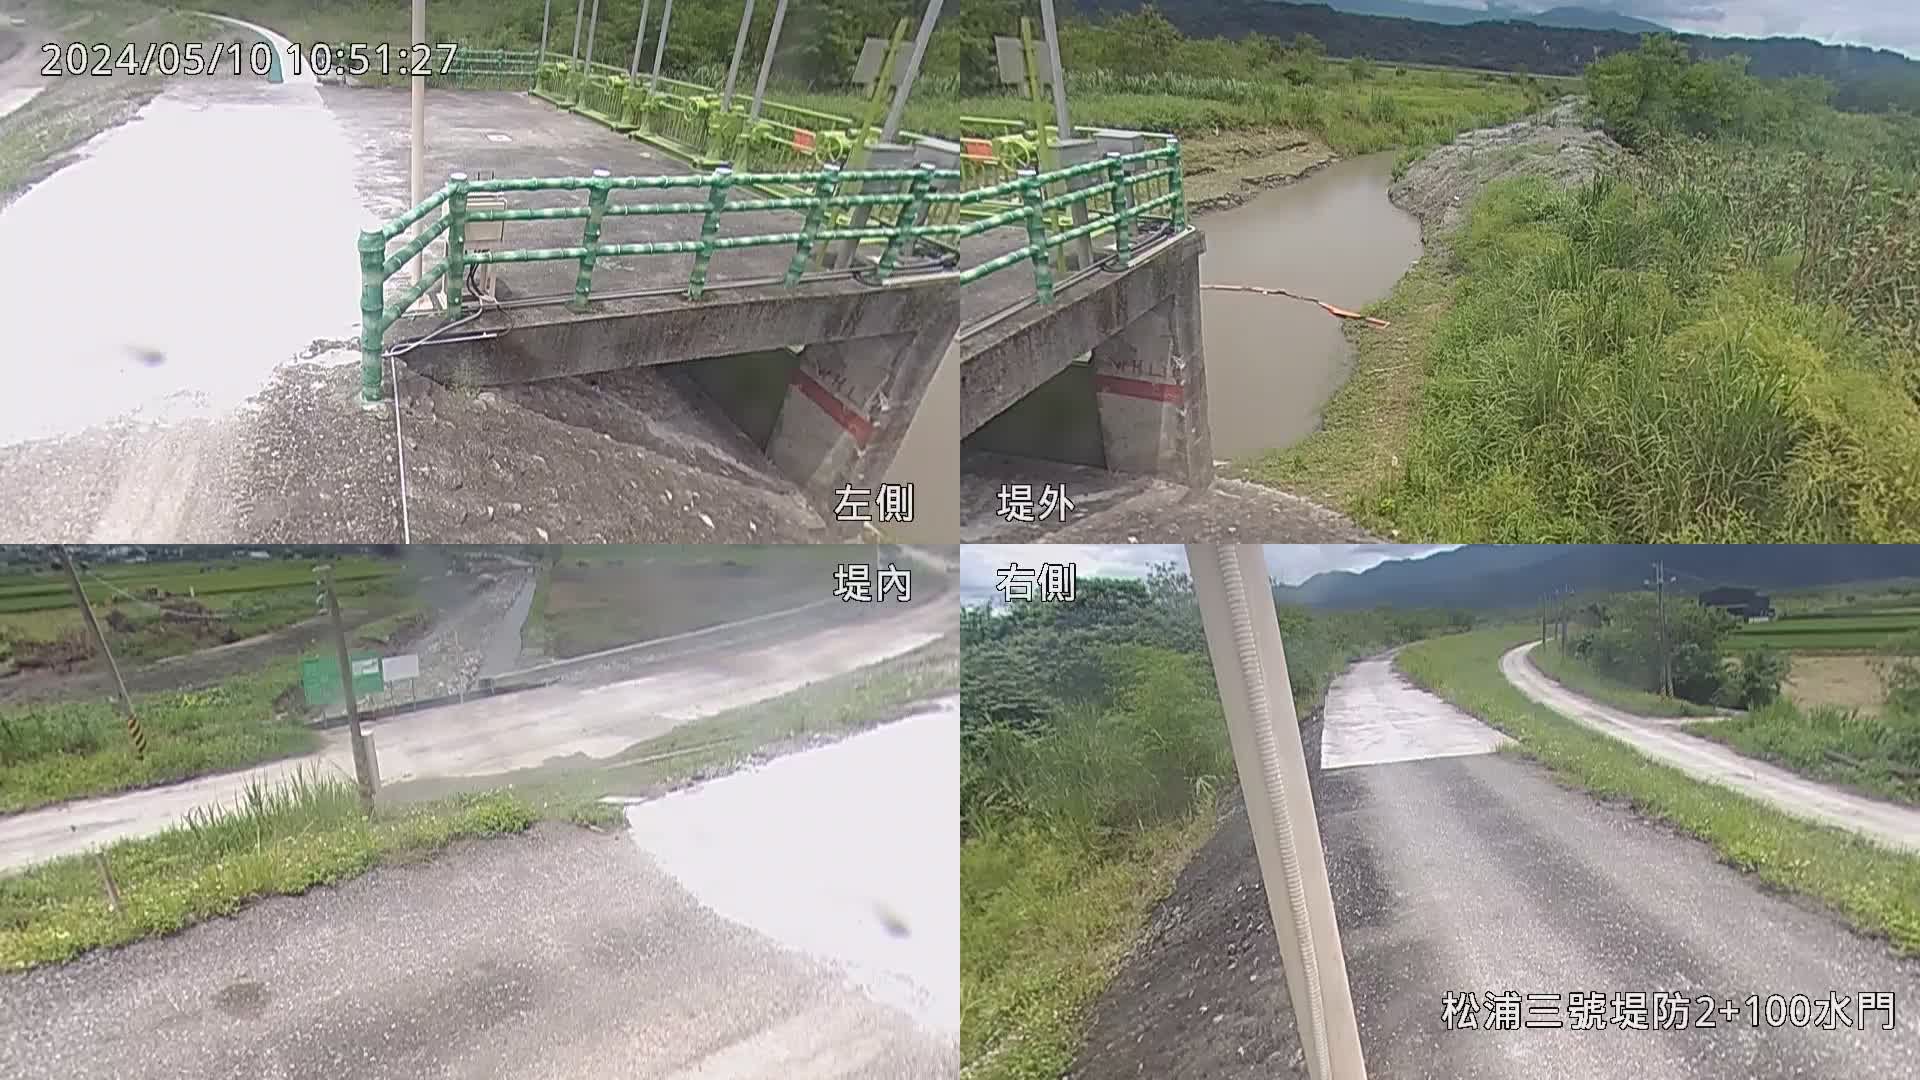 水利署水資源 九河局 松浦三號堤防 2K+100水門 全景攝影機